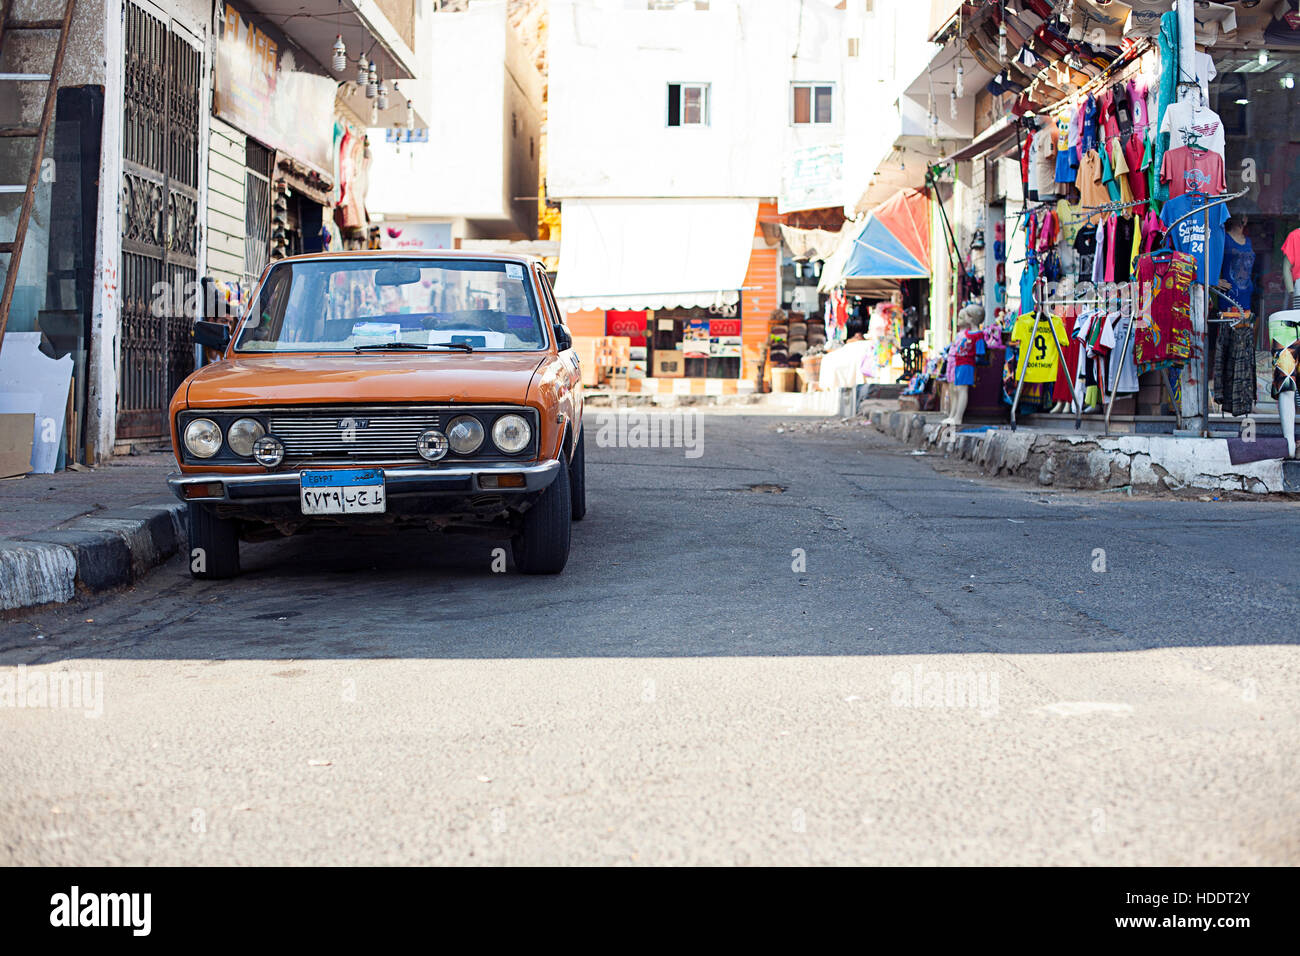 L'Egypte Sharm el Sheikh - août 2016 : marché bazar à l'extérieur de l'avant sans les personnes, vieille voiture Fiat Banque D'Images